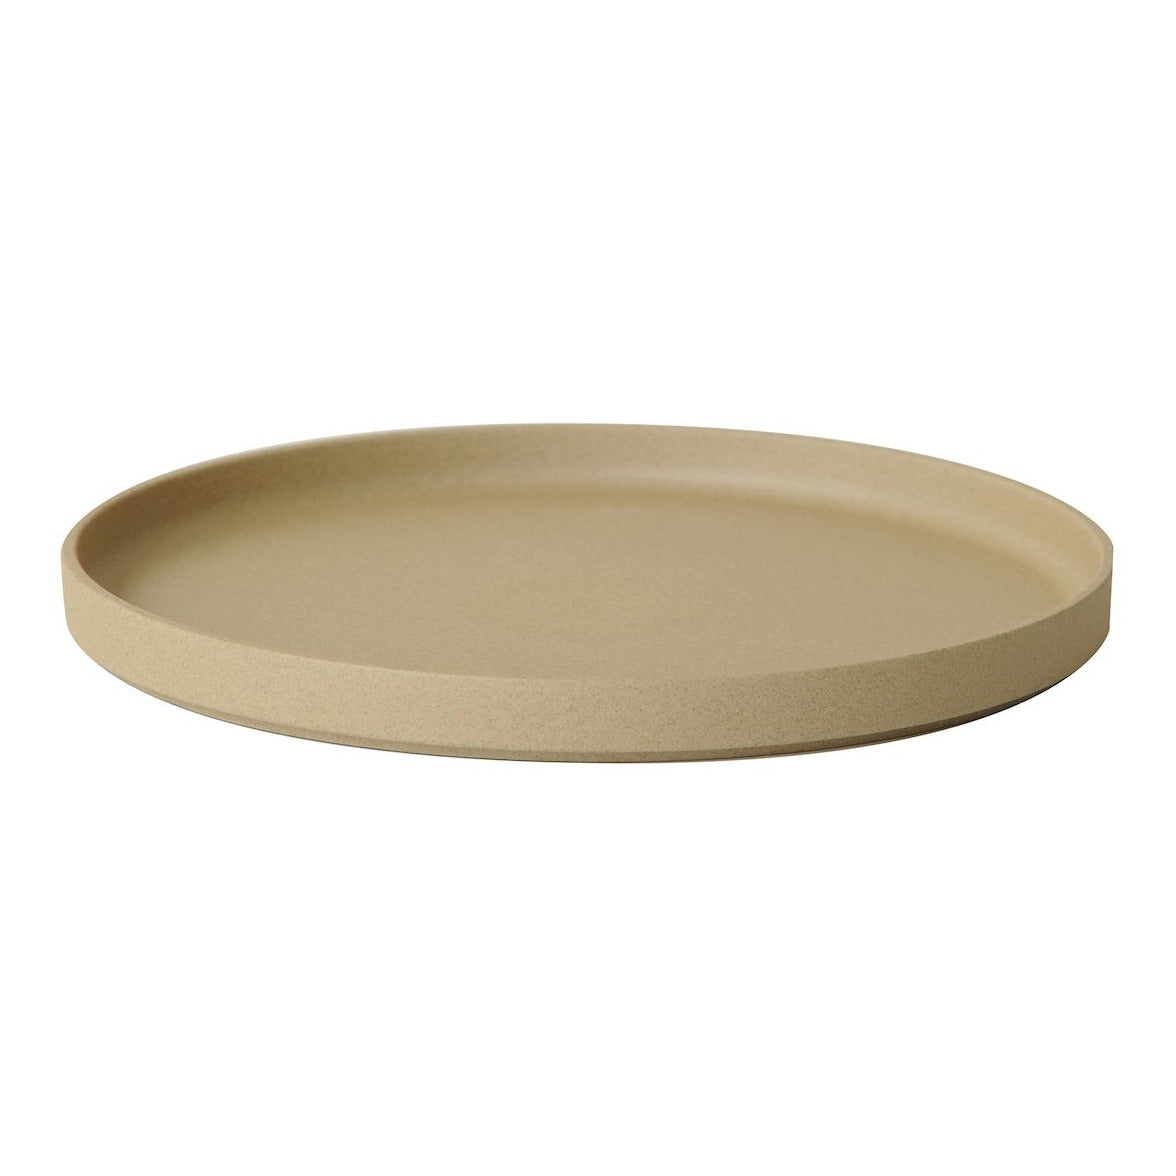 Plate | natural matt Ø 25.5cm